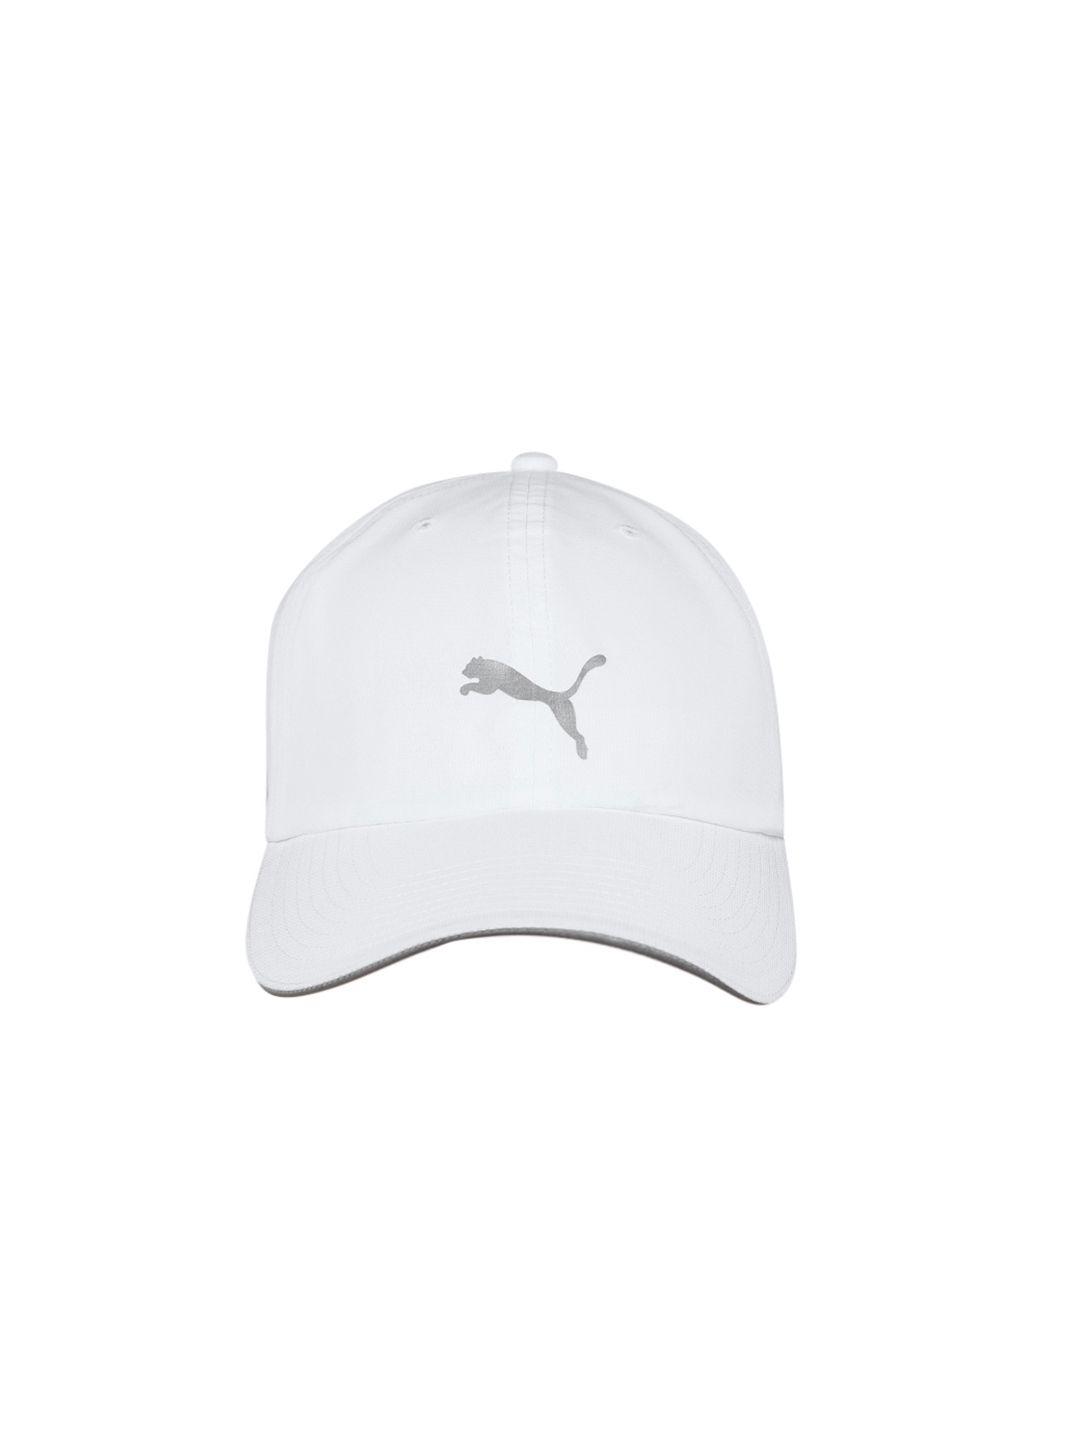 puma unisex white brand logo printed running baseball cap